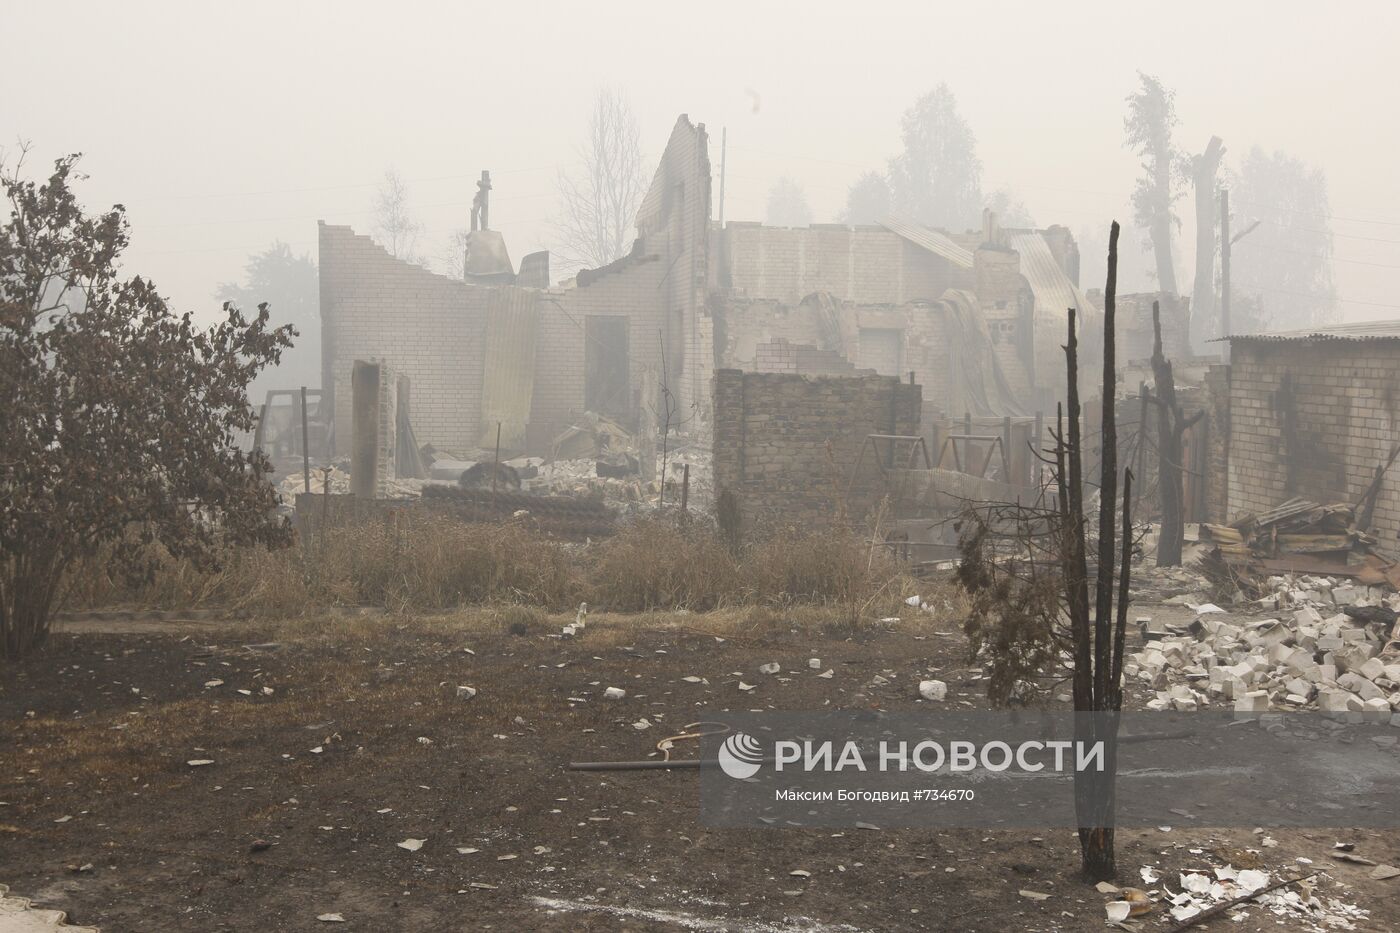 Сгоревшие дома в поселке Борковка Нижегородской области